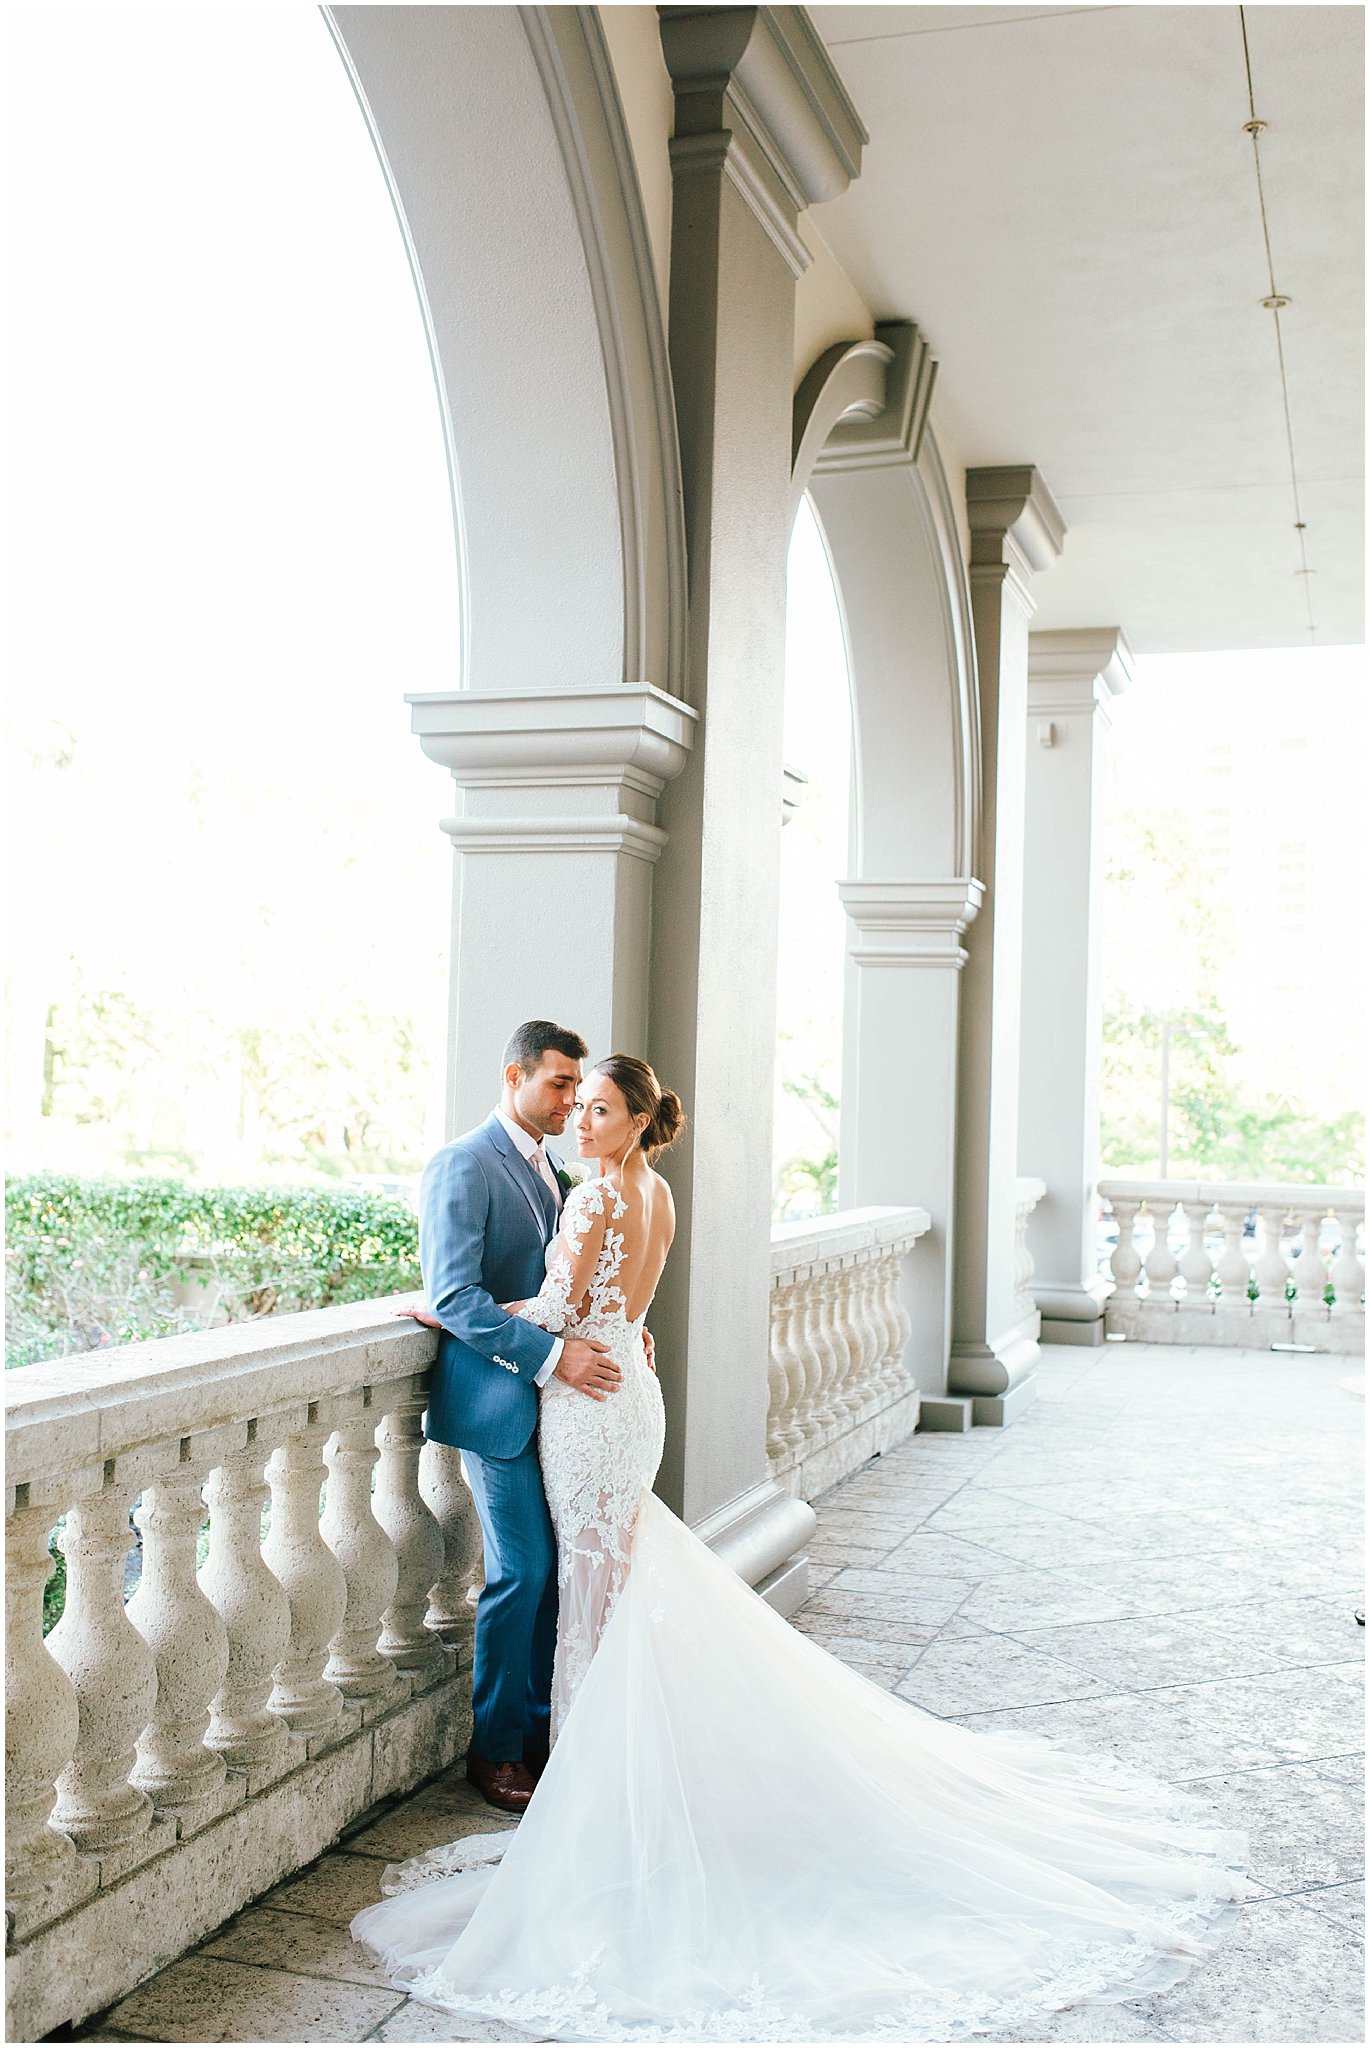 Blythe & Anthony | Ritz Carlton Naples | Wedding | Naples_0337.jpg